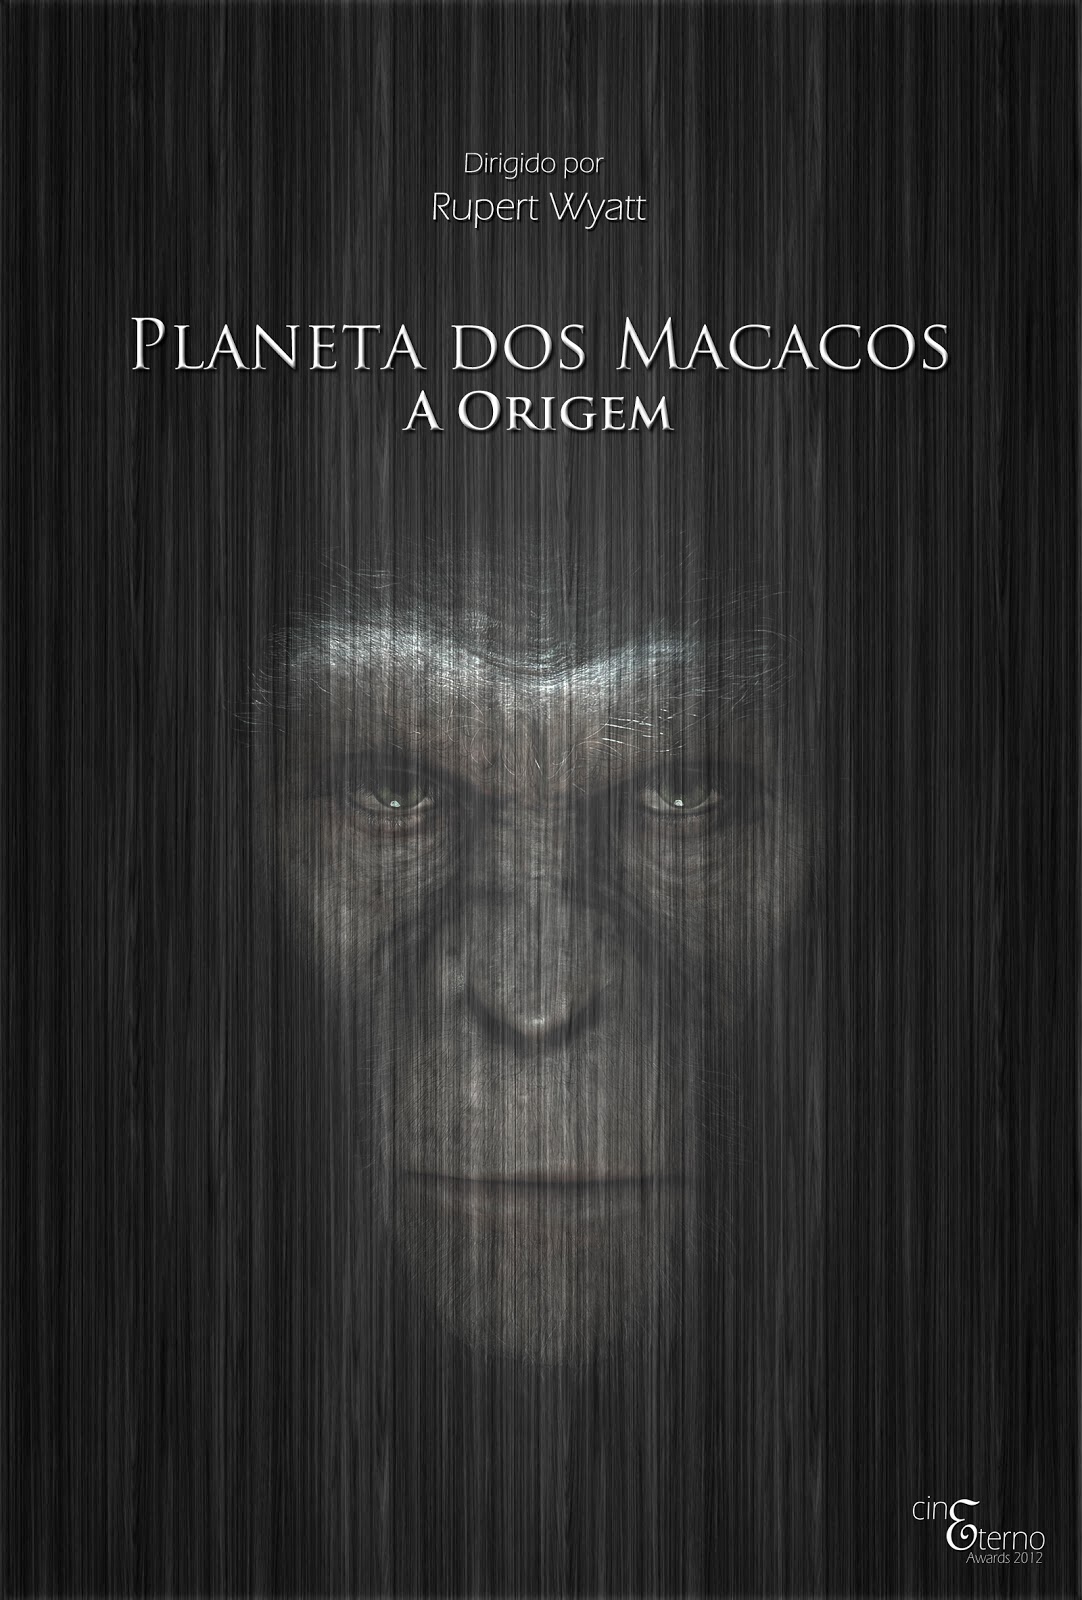 [ARTIGO] O Planeta dos Macacos Planeta+dos+macacos